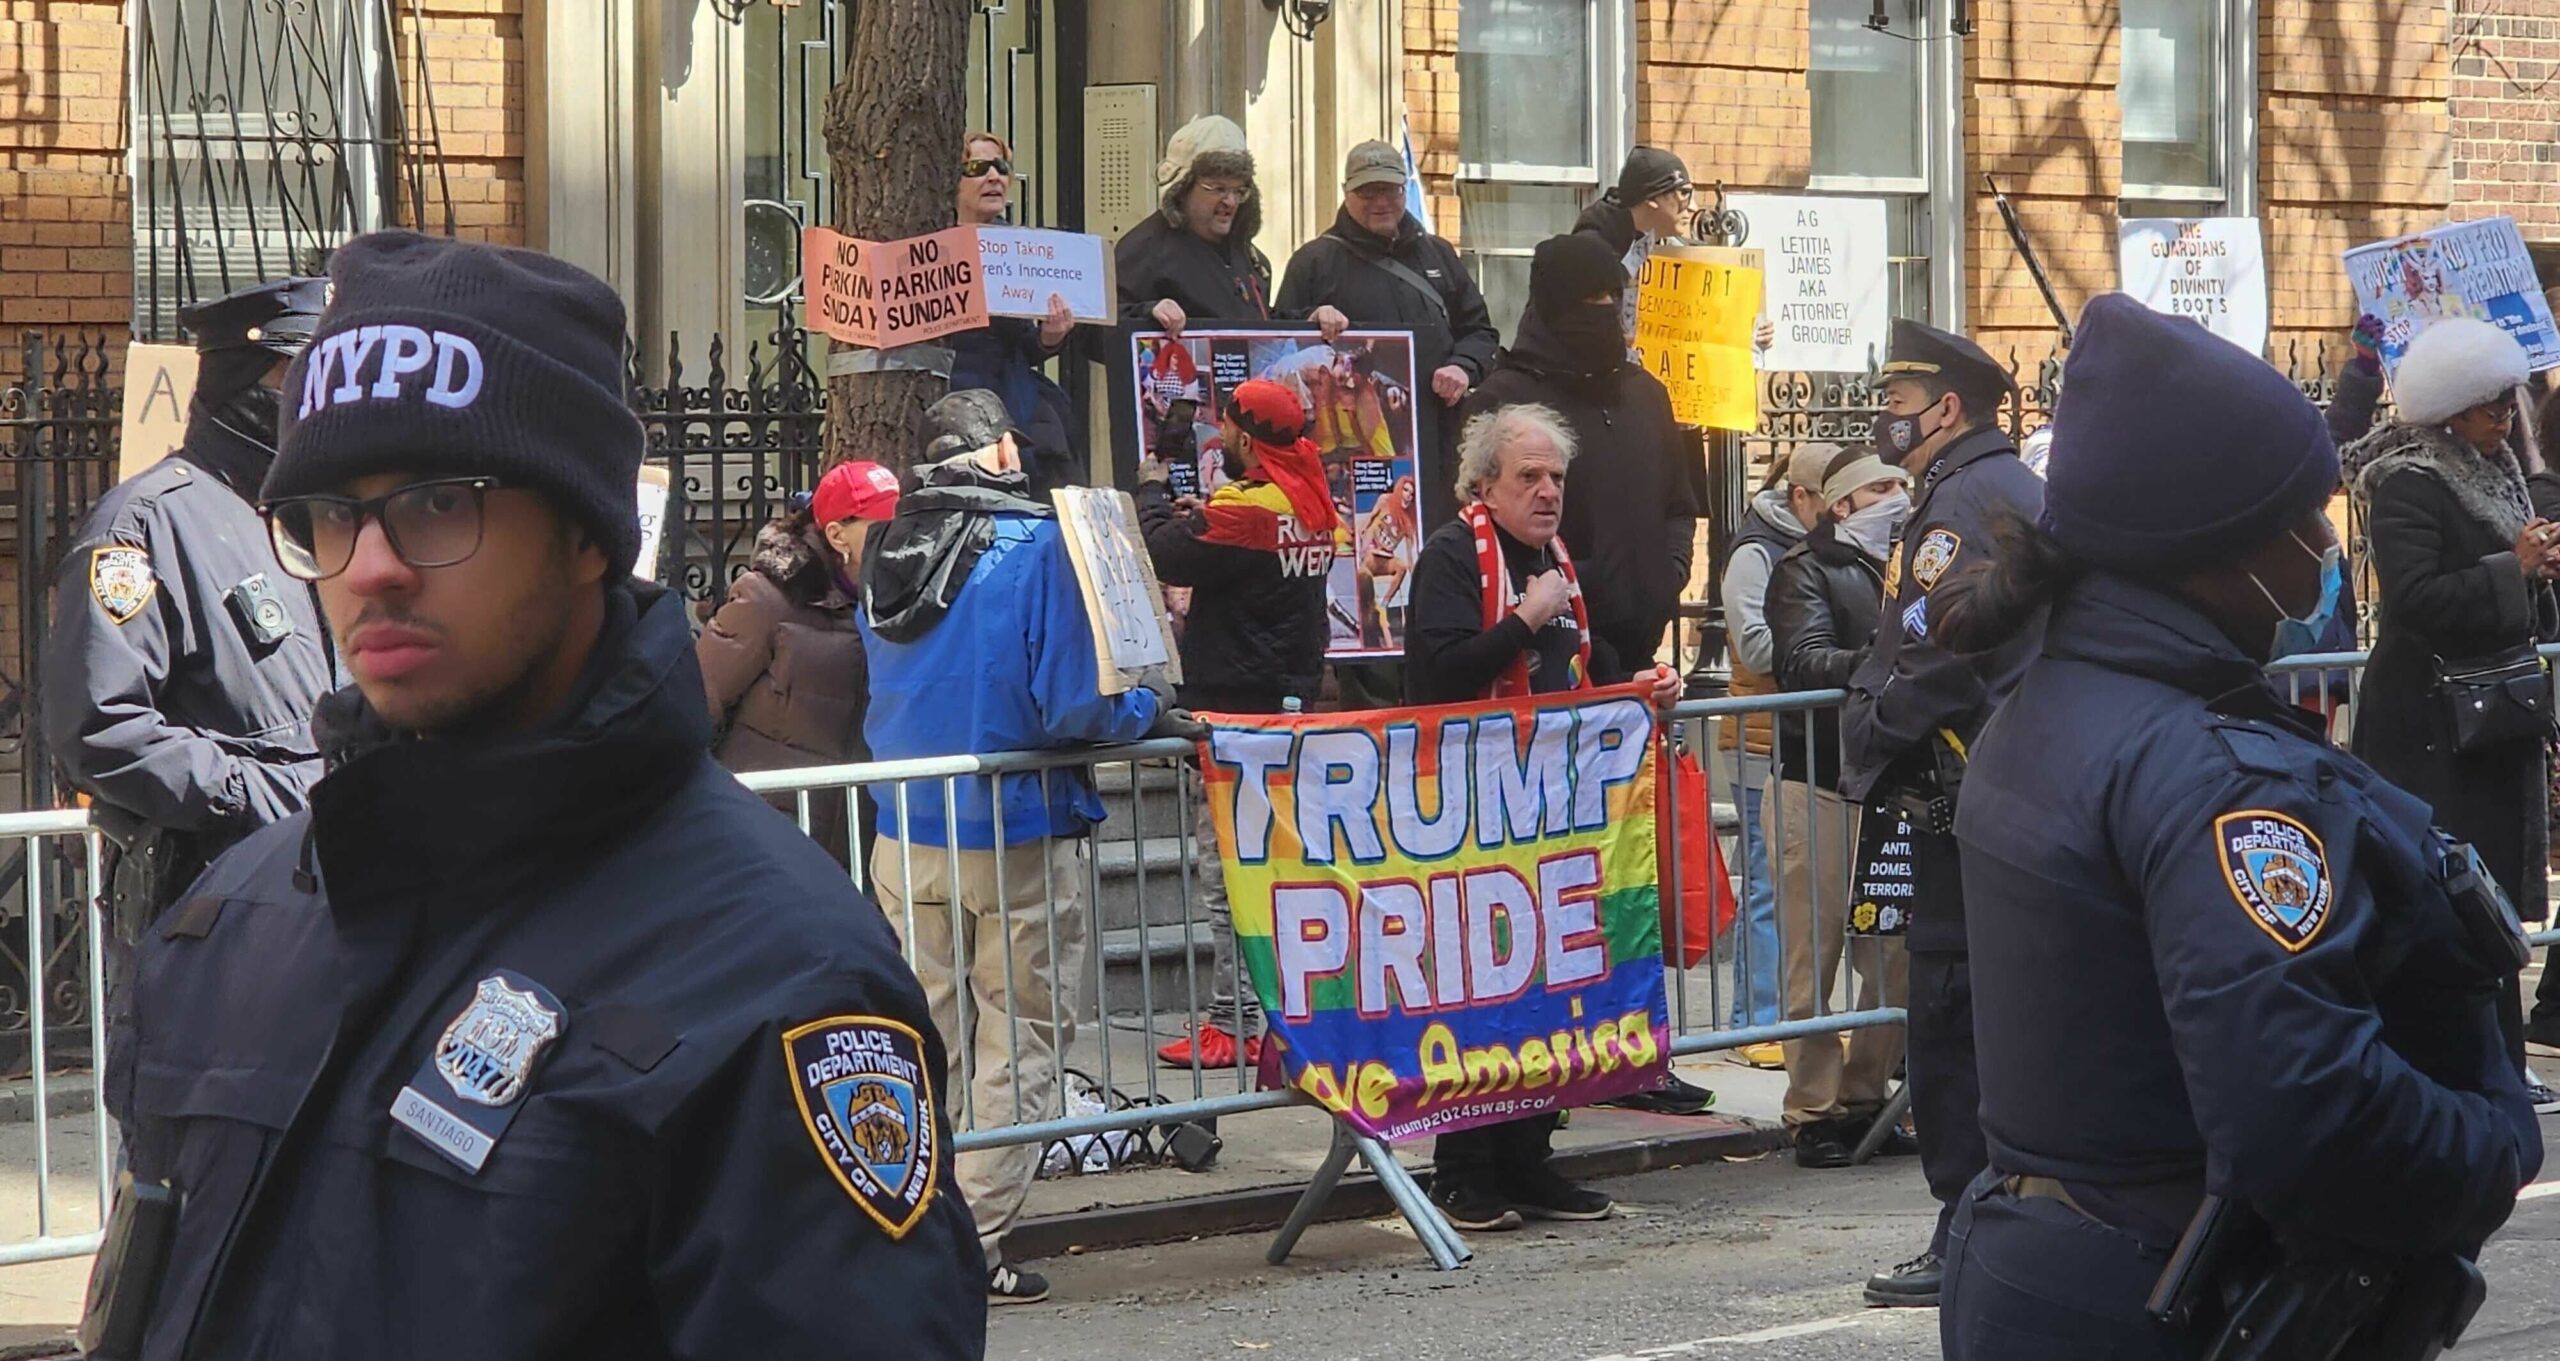 Une photo des manifestants contre la Drag Story Hour debout sur un trottoir, cernés par des clôtures métalliques mobiles placées le long du trottoir dans la rue. Une personne porte une épingle 